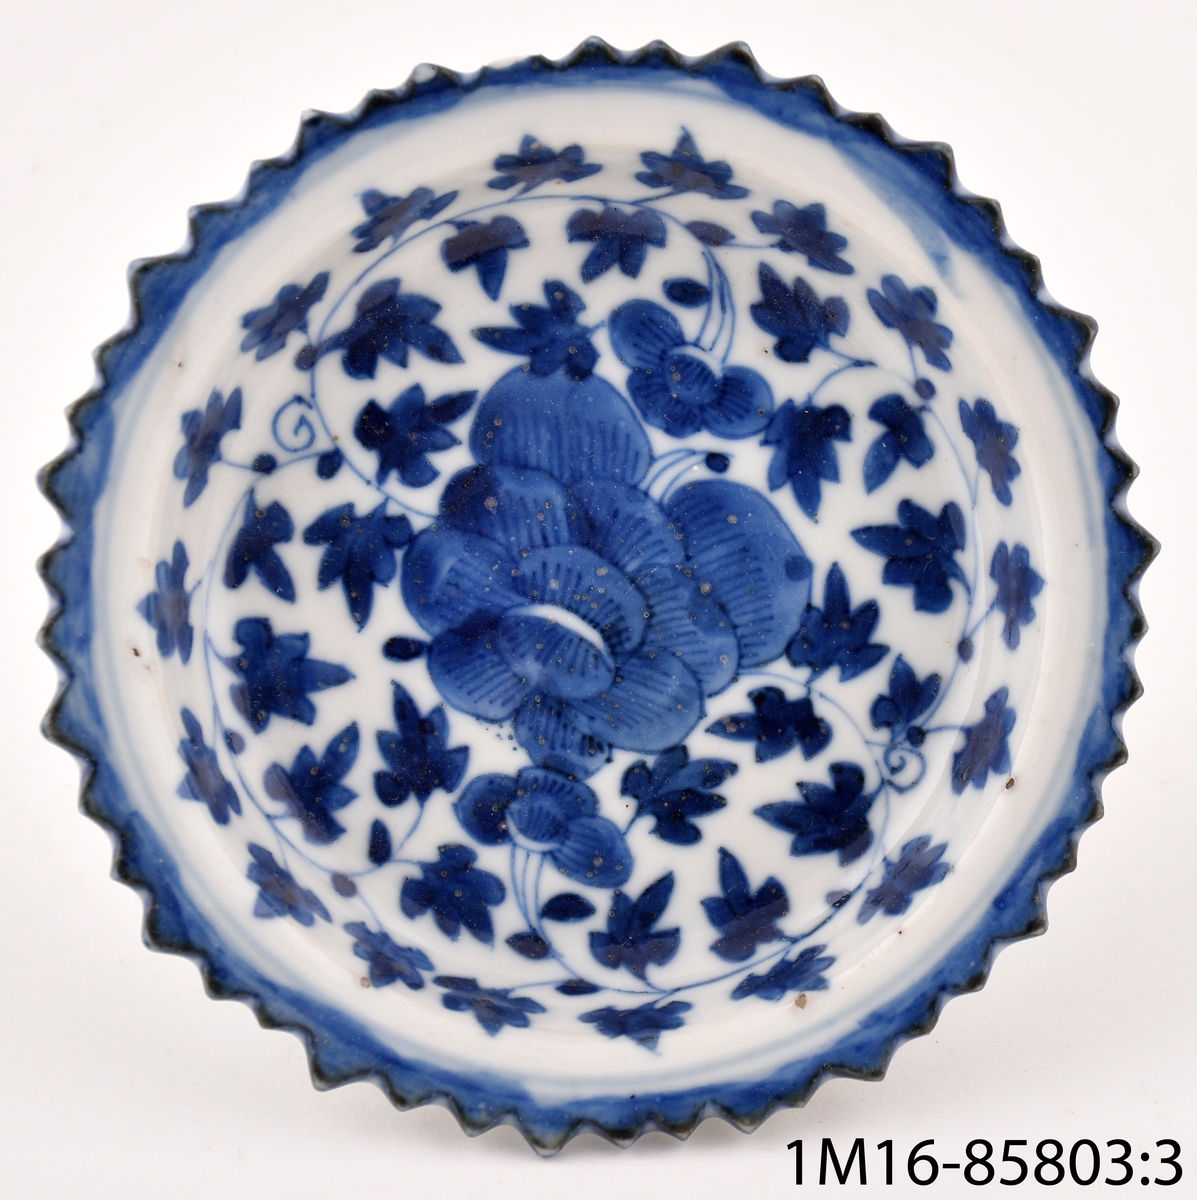 Skål, rikt dekorerat i blått, med uddig kant